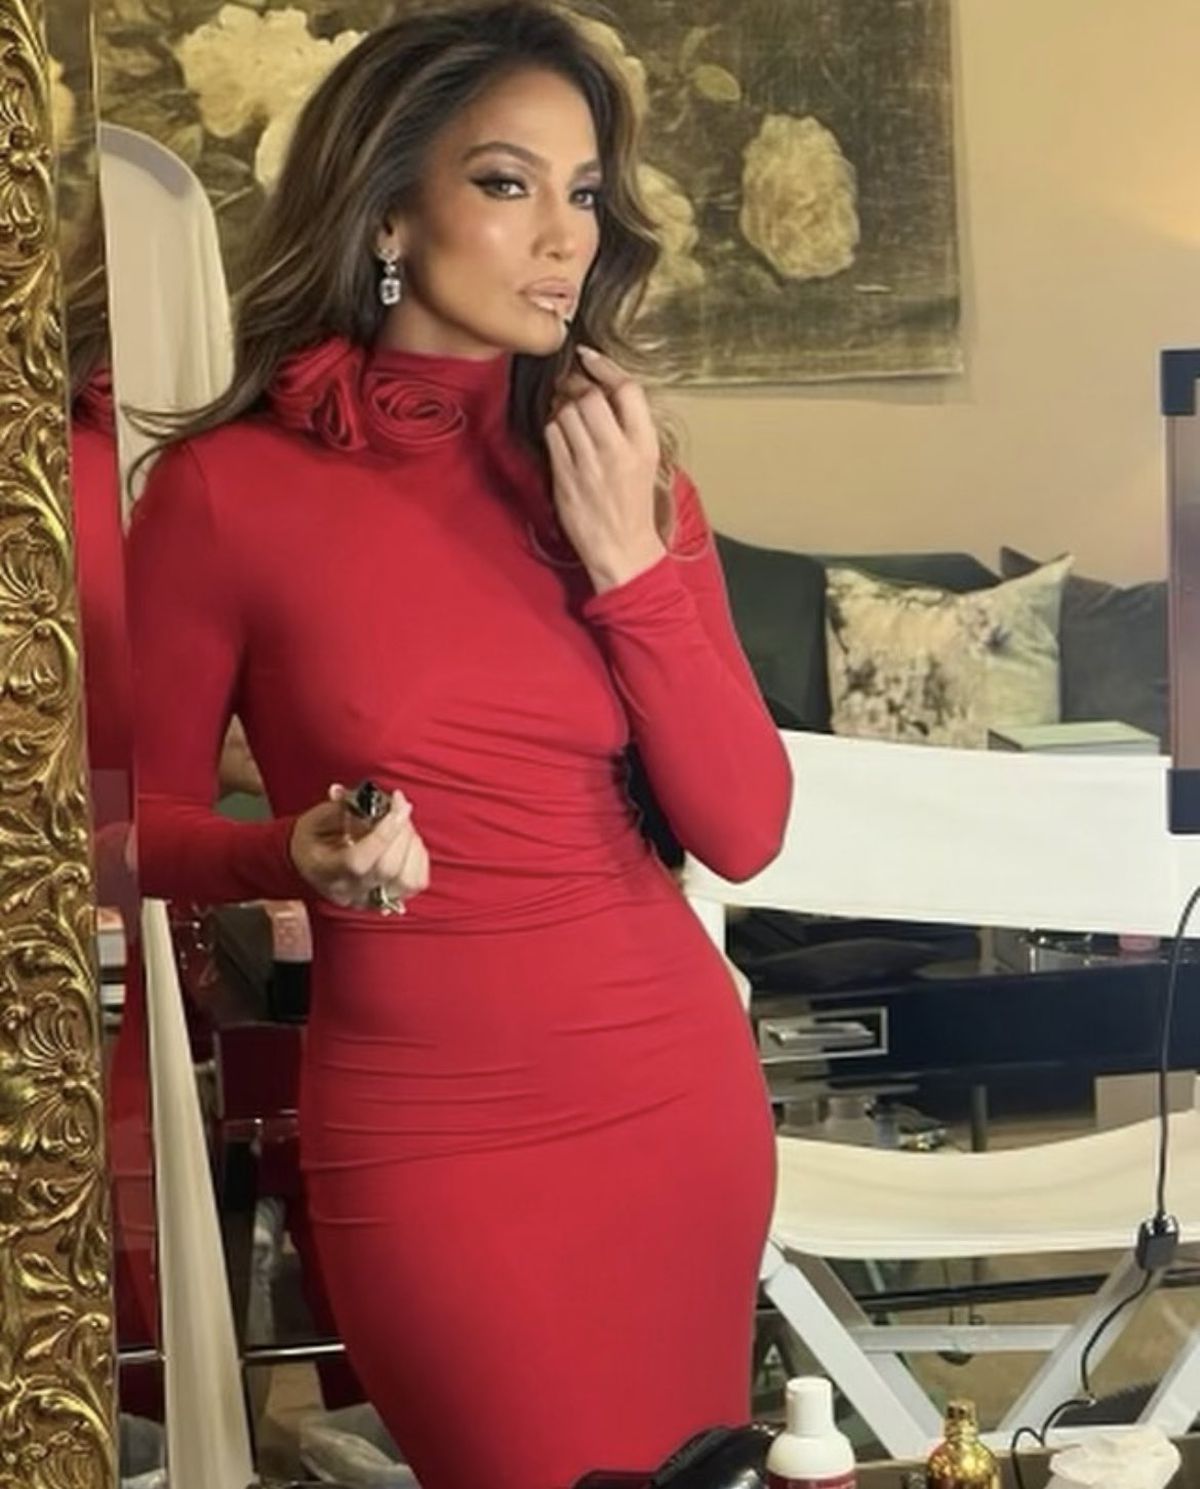 Jennifer Lopez, în rochia roșie purtată de Iga Swiatek » Imaginea a devenit virală după ce fanii au sesizat ce ajustări a făcut J. LO